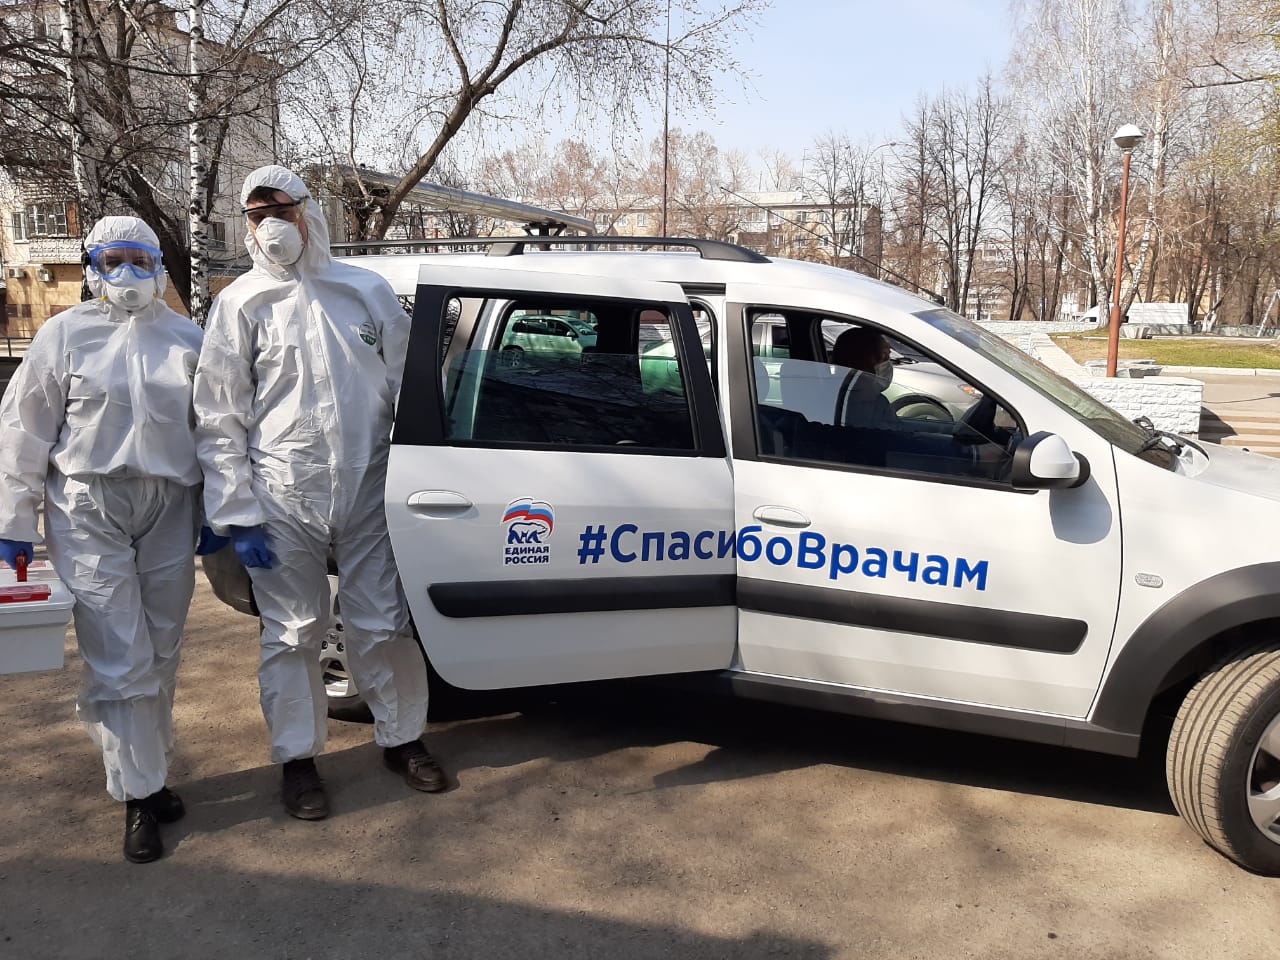 Две поликлиники в Кемерове и Новокузнецке получили по автомобилю